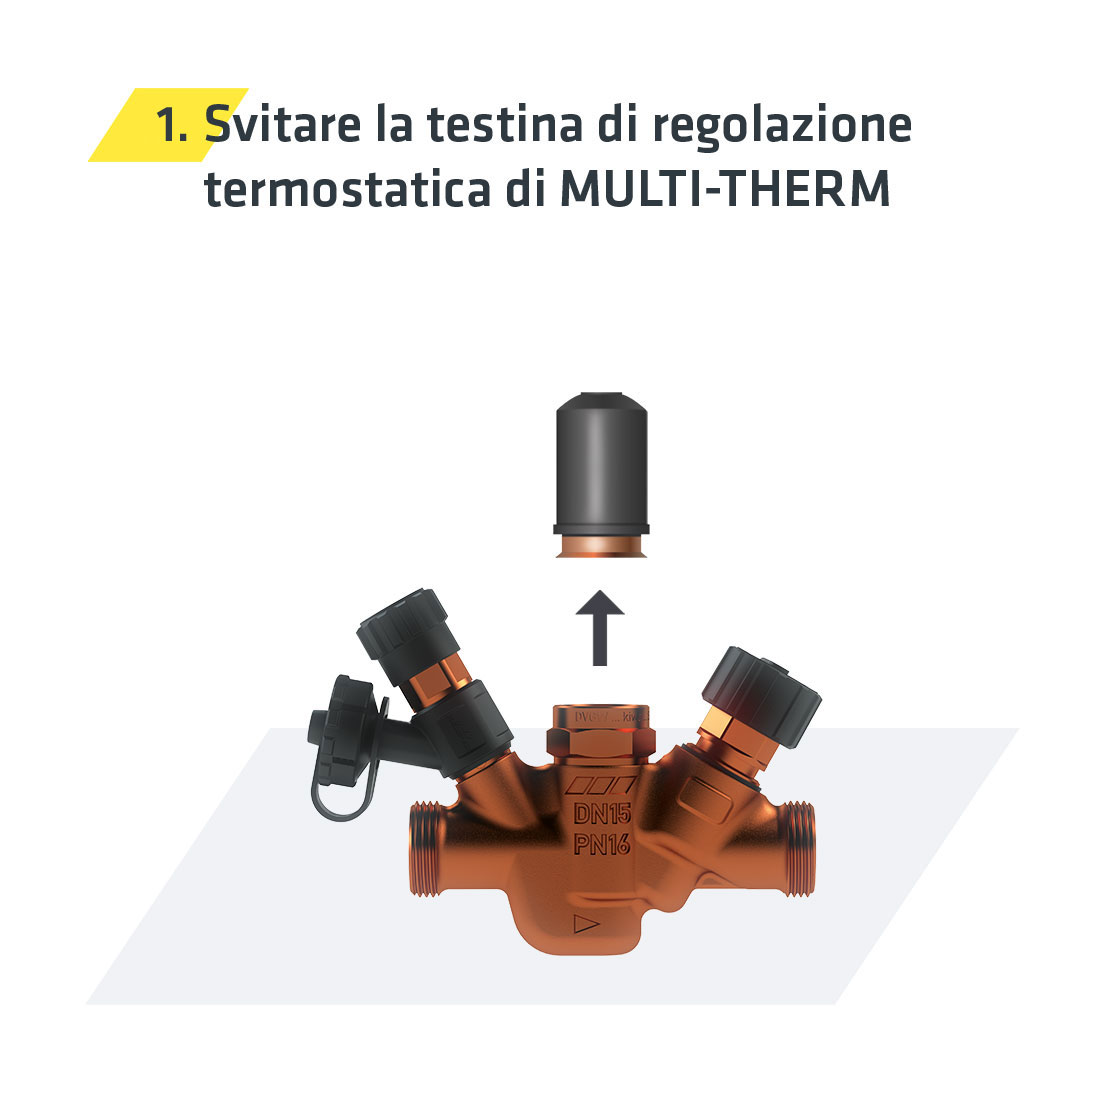 Upgrade a Multi-Therm-Pro – Immagine svitare la testina di regolazione del termostato Multi-Therm | Kemper Group